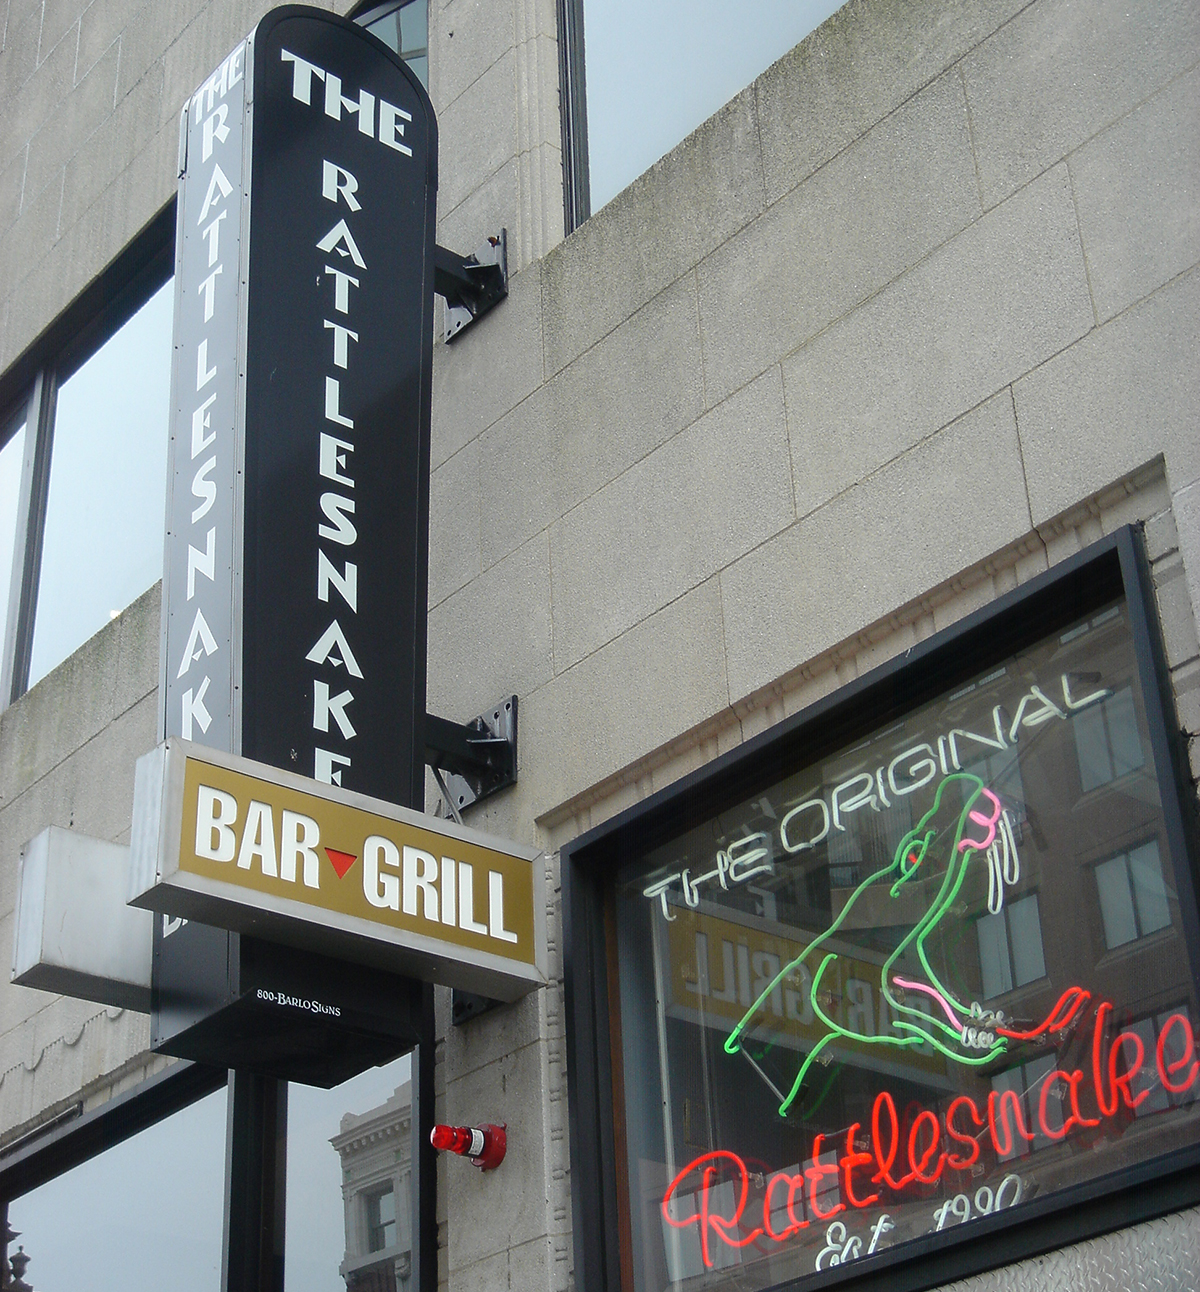 The Rattlesnake Bar & Grill